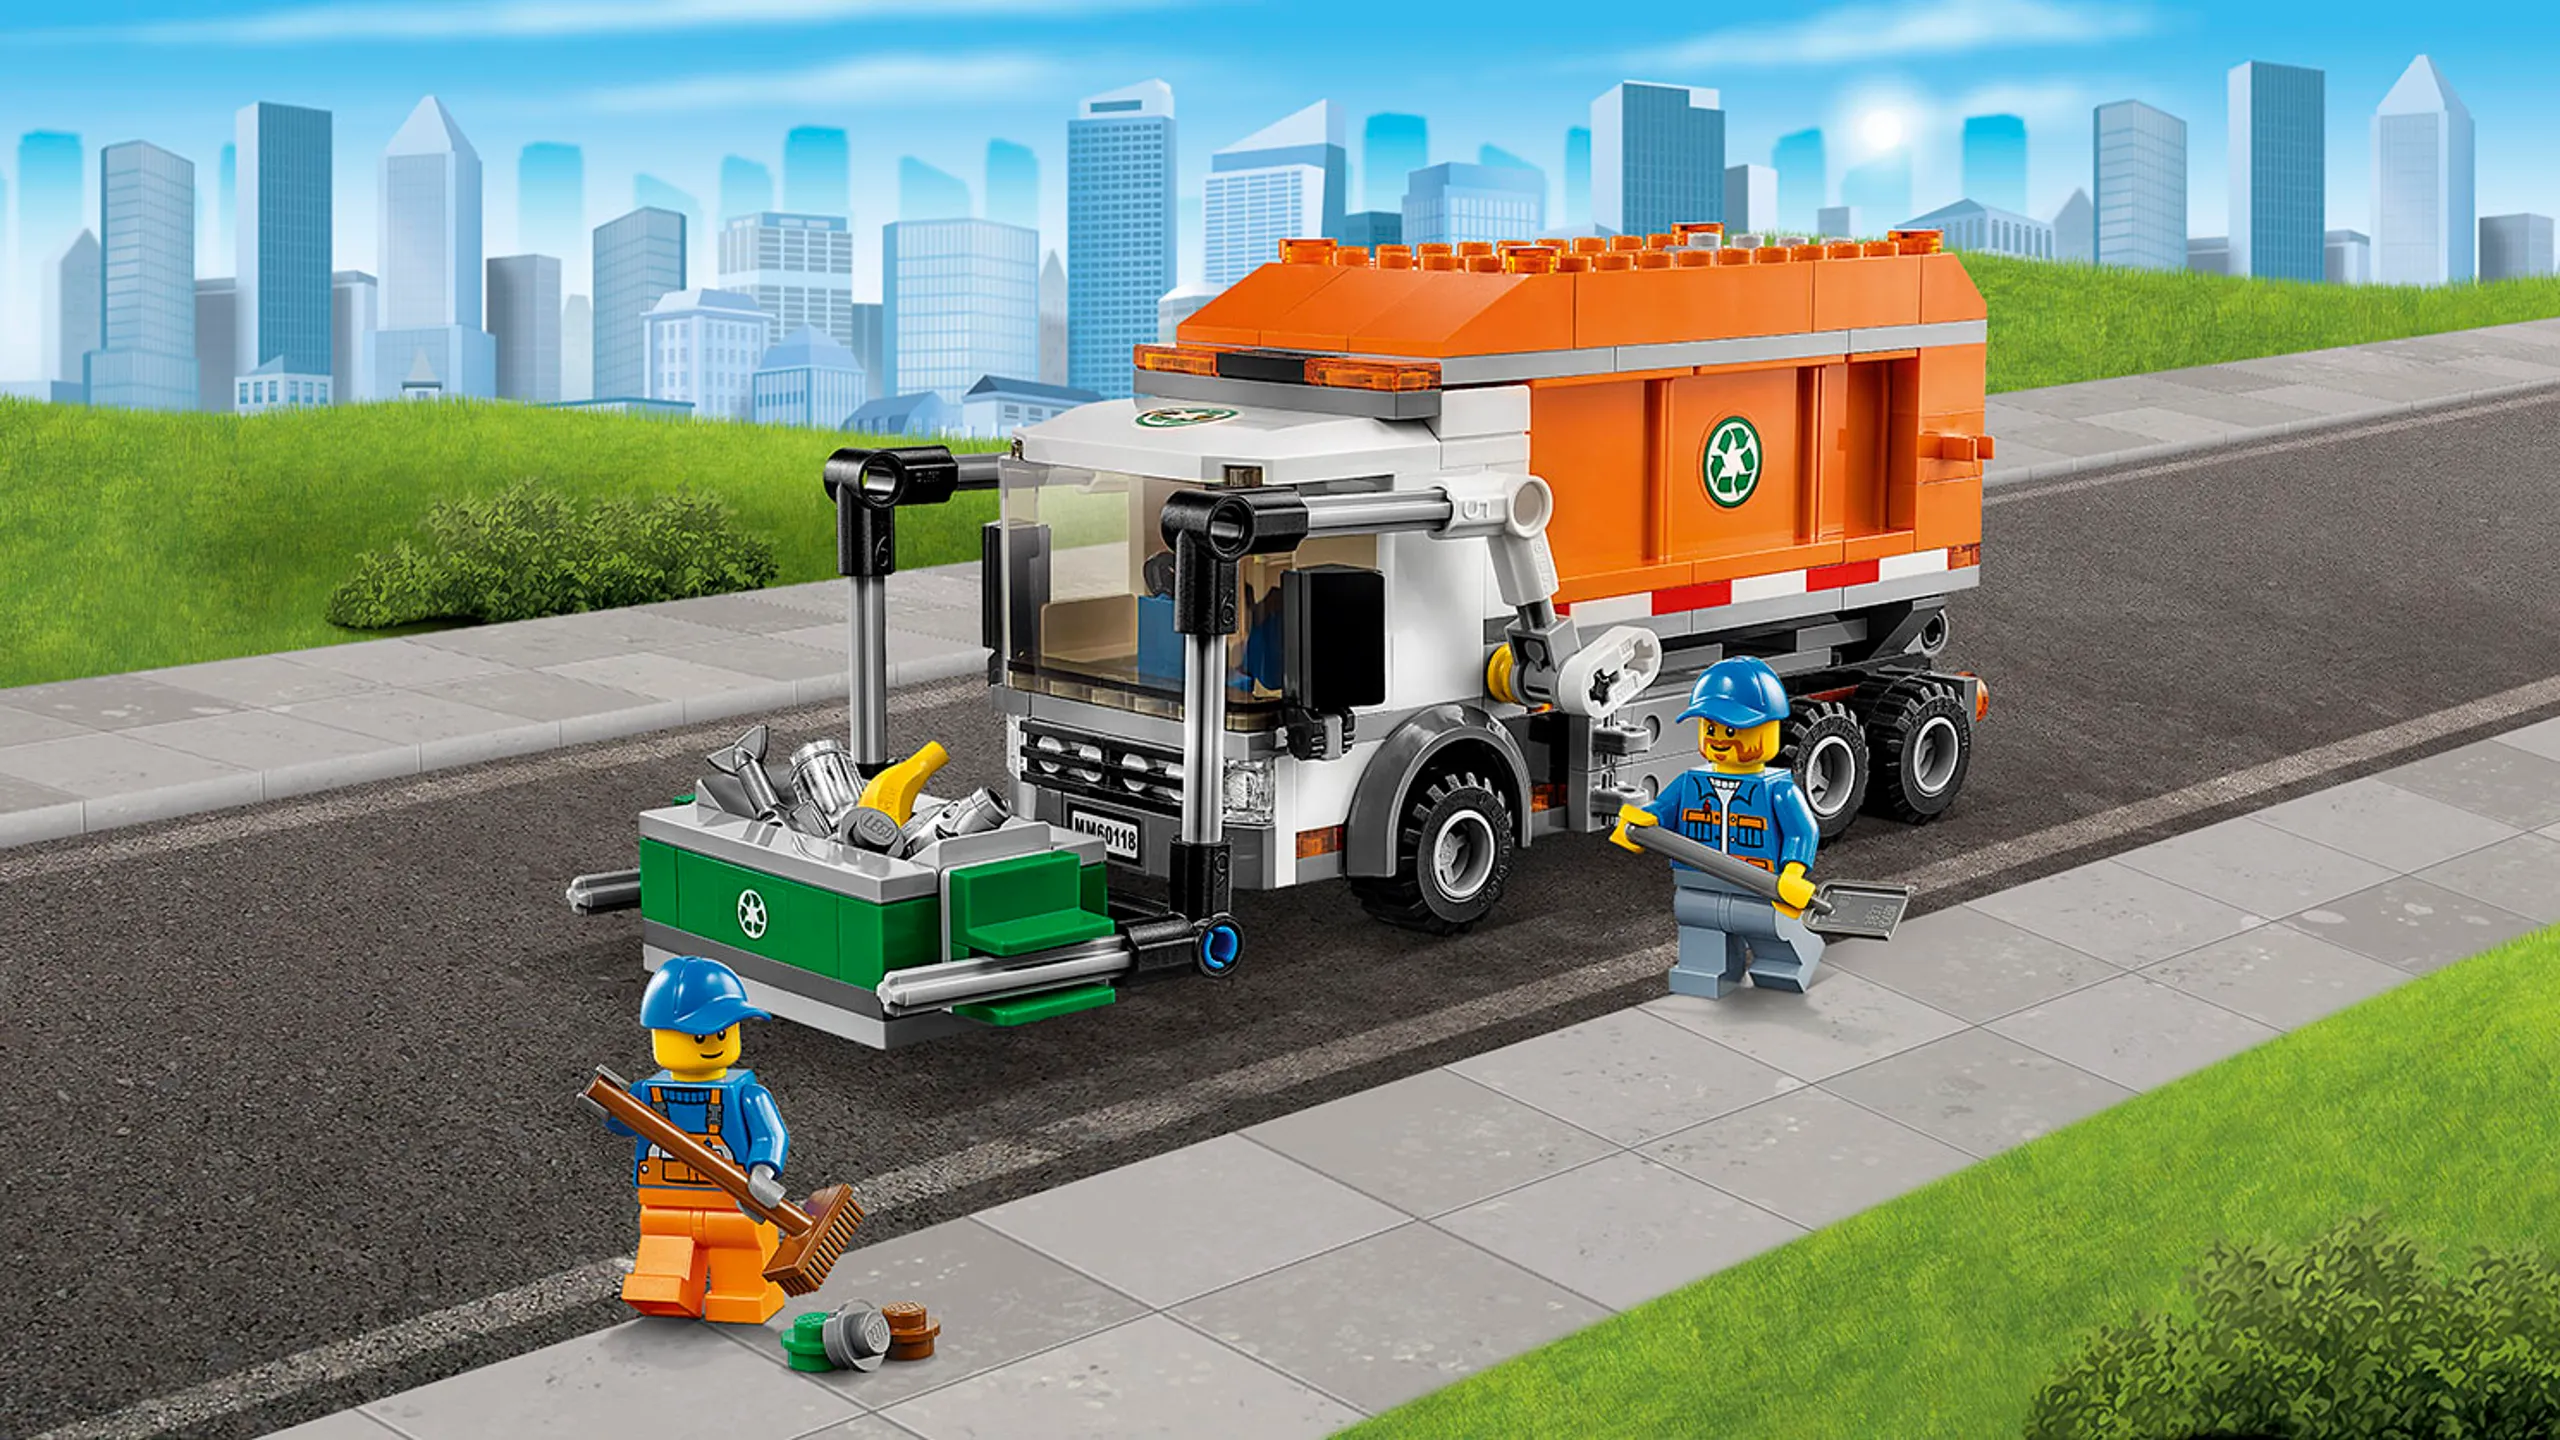 LEGO City Fantastiske fartøjer – skraldevogn, container og minifigurer – Skraldevogn 60118